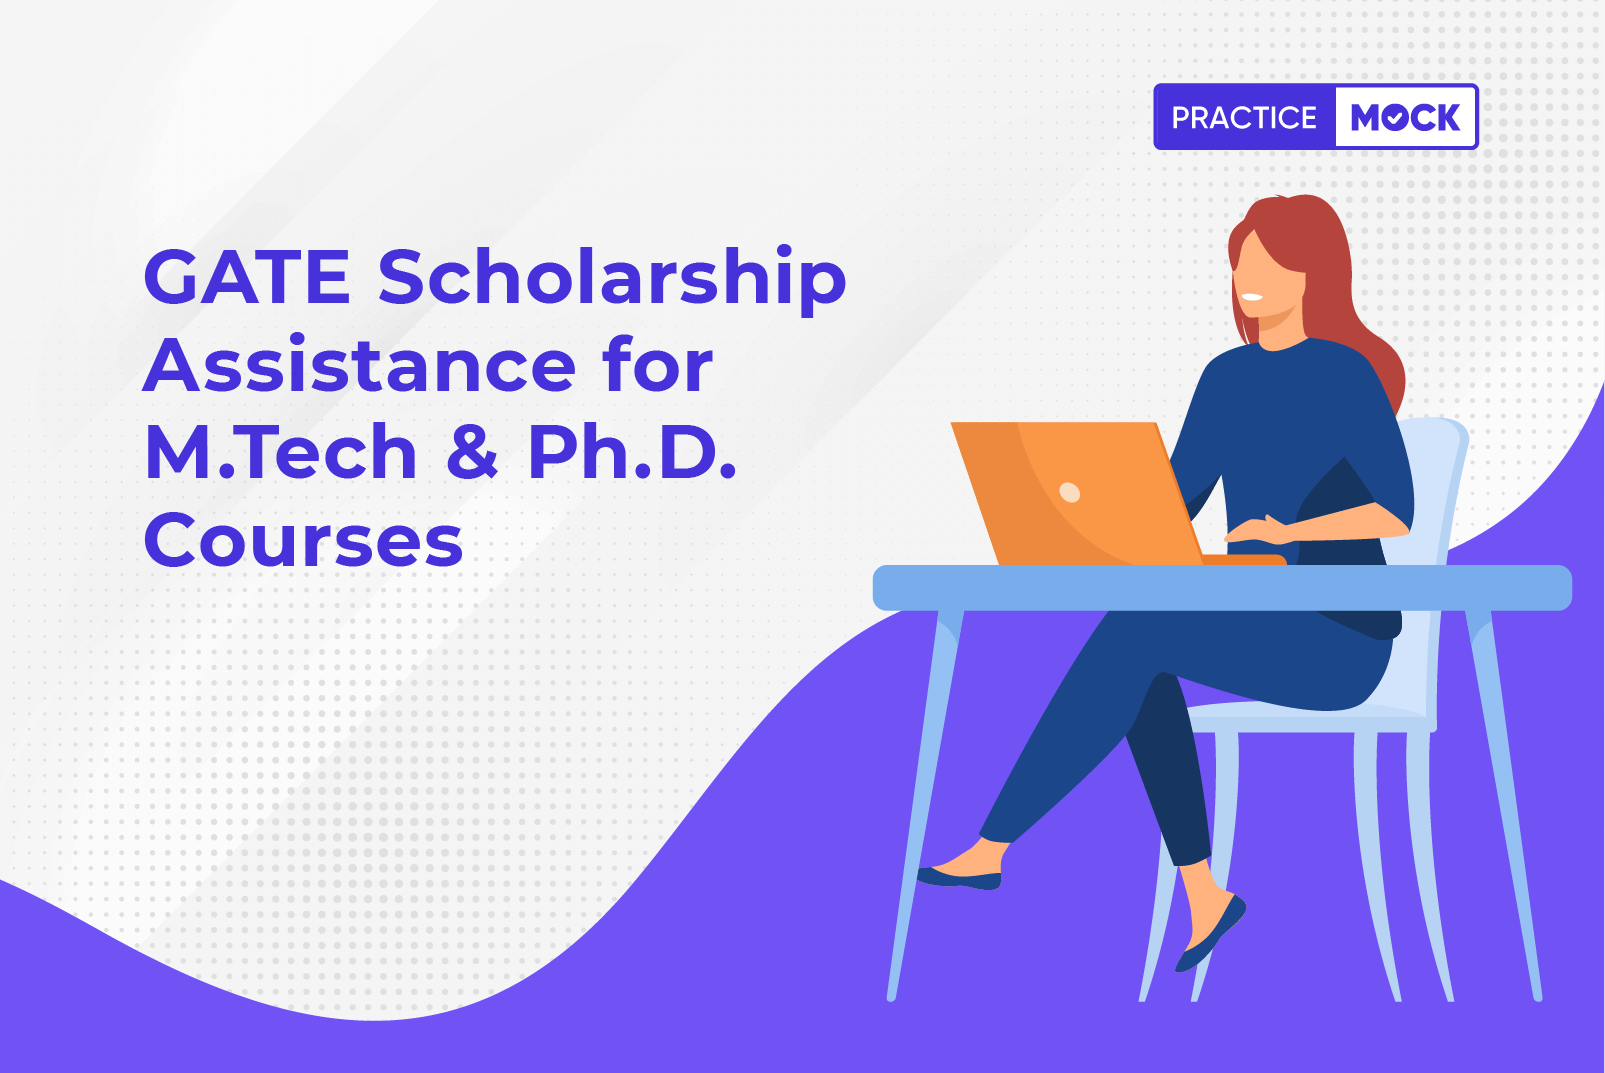 GATE Scholarship Assistance for M.Tech & Ph.D. Courses